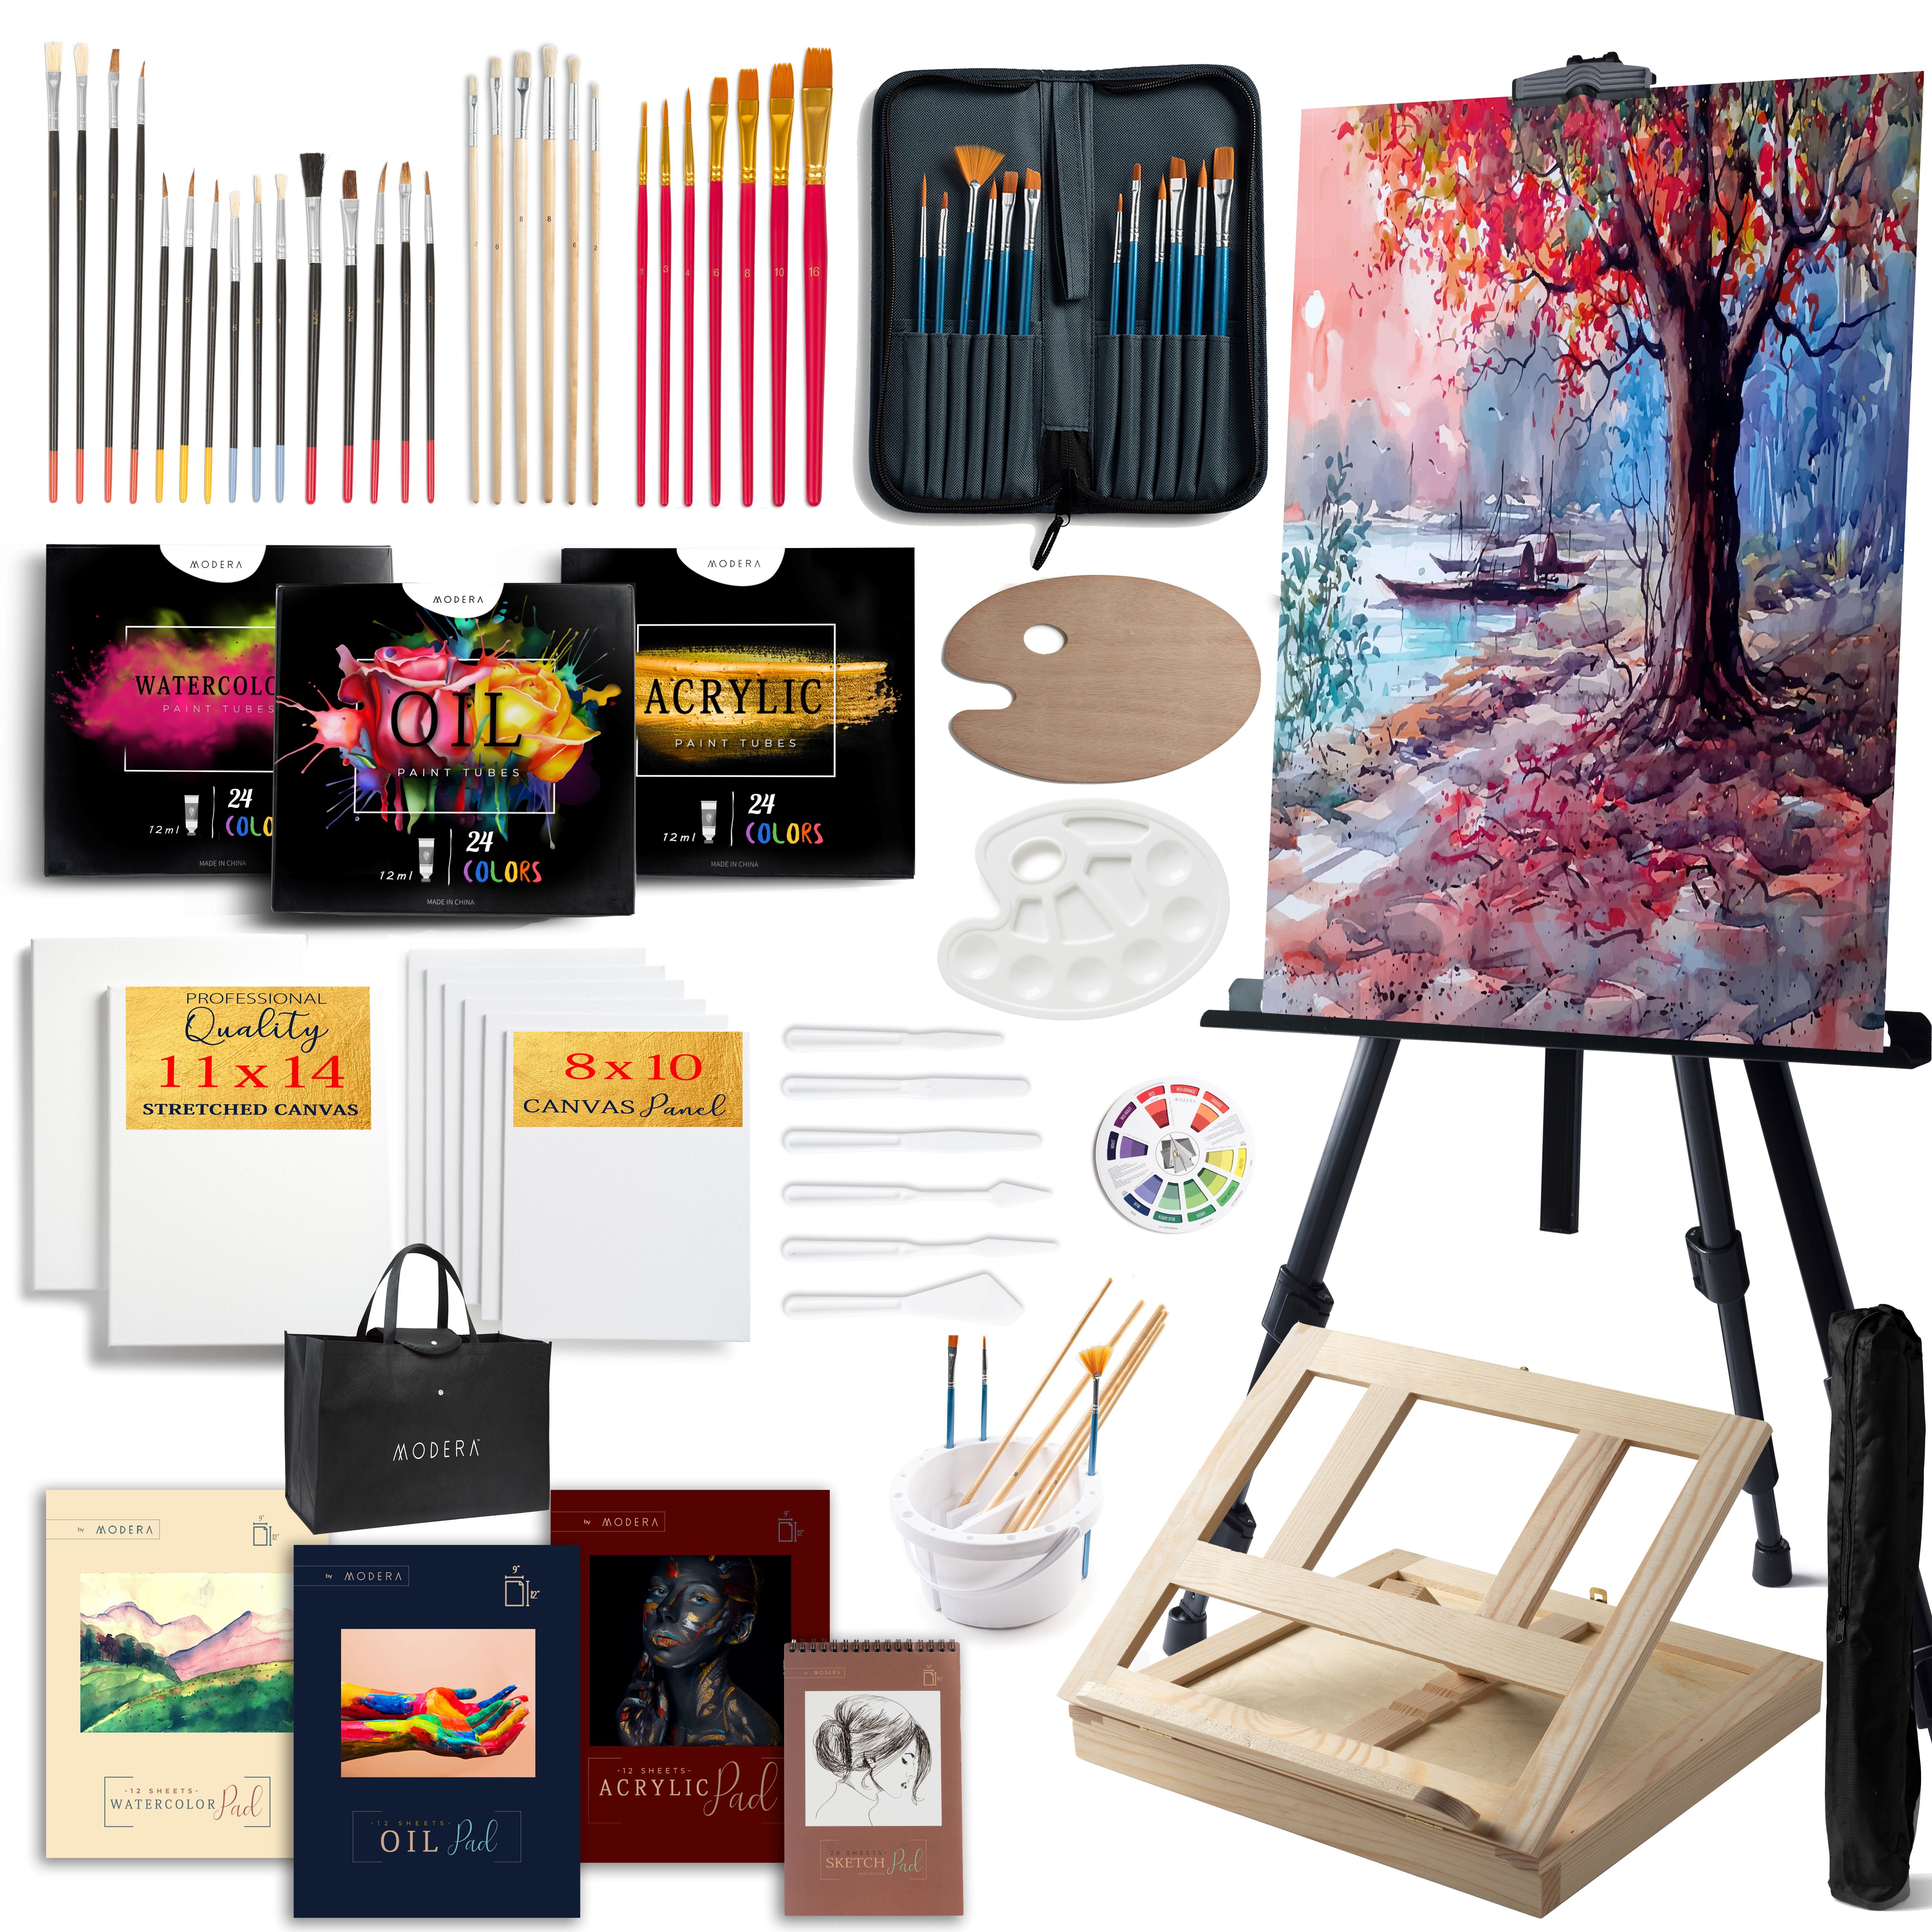 FixtureDisplays 80 Pieces of Deluxe Art Set-Painting Art Supplies